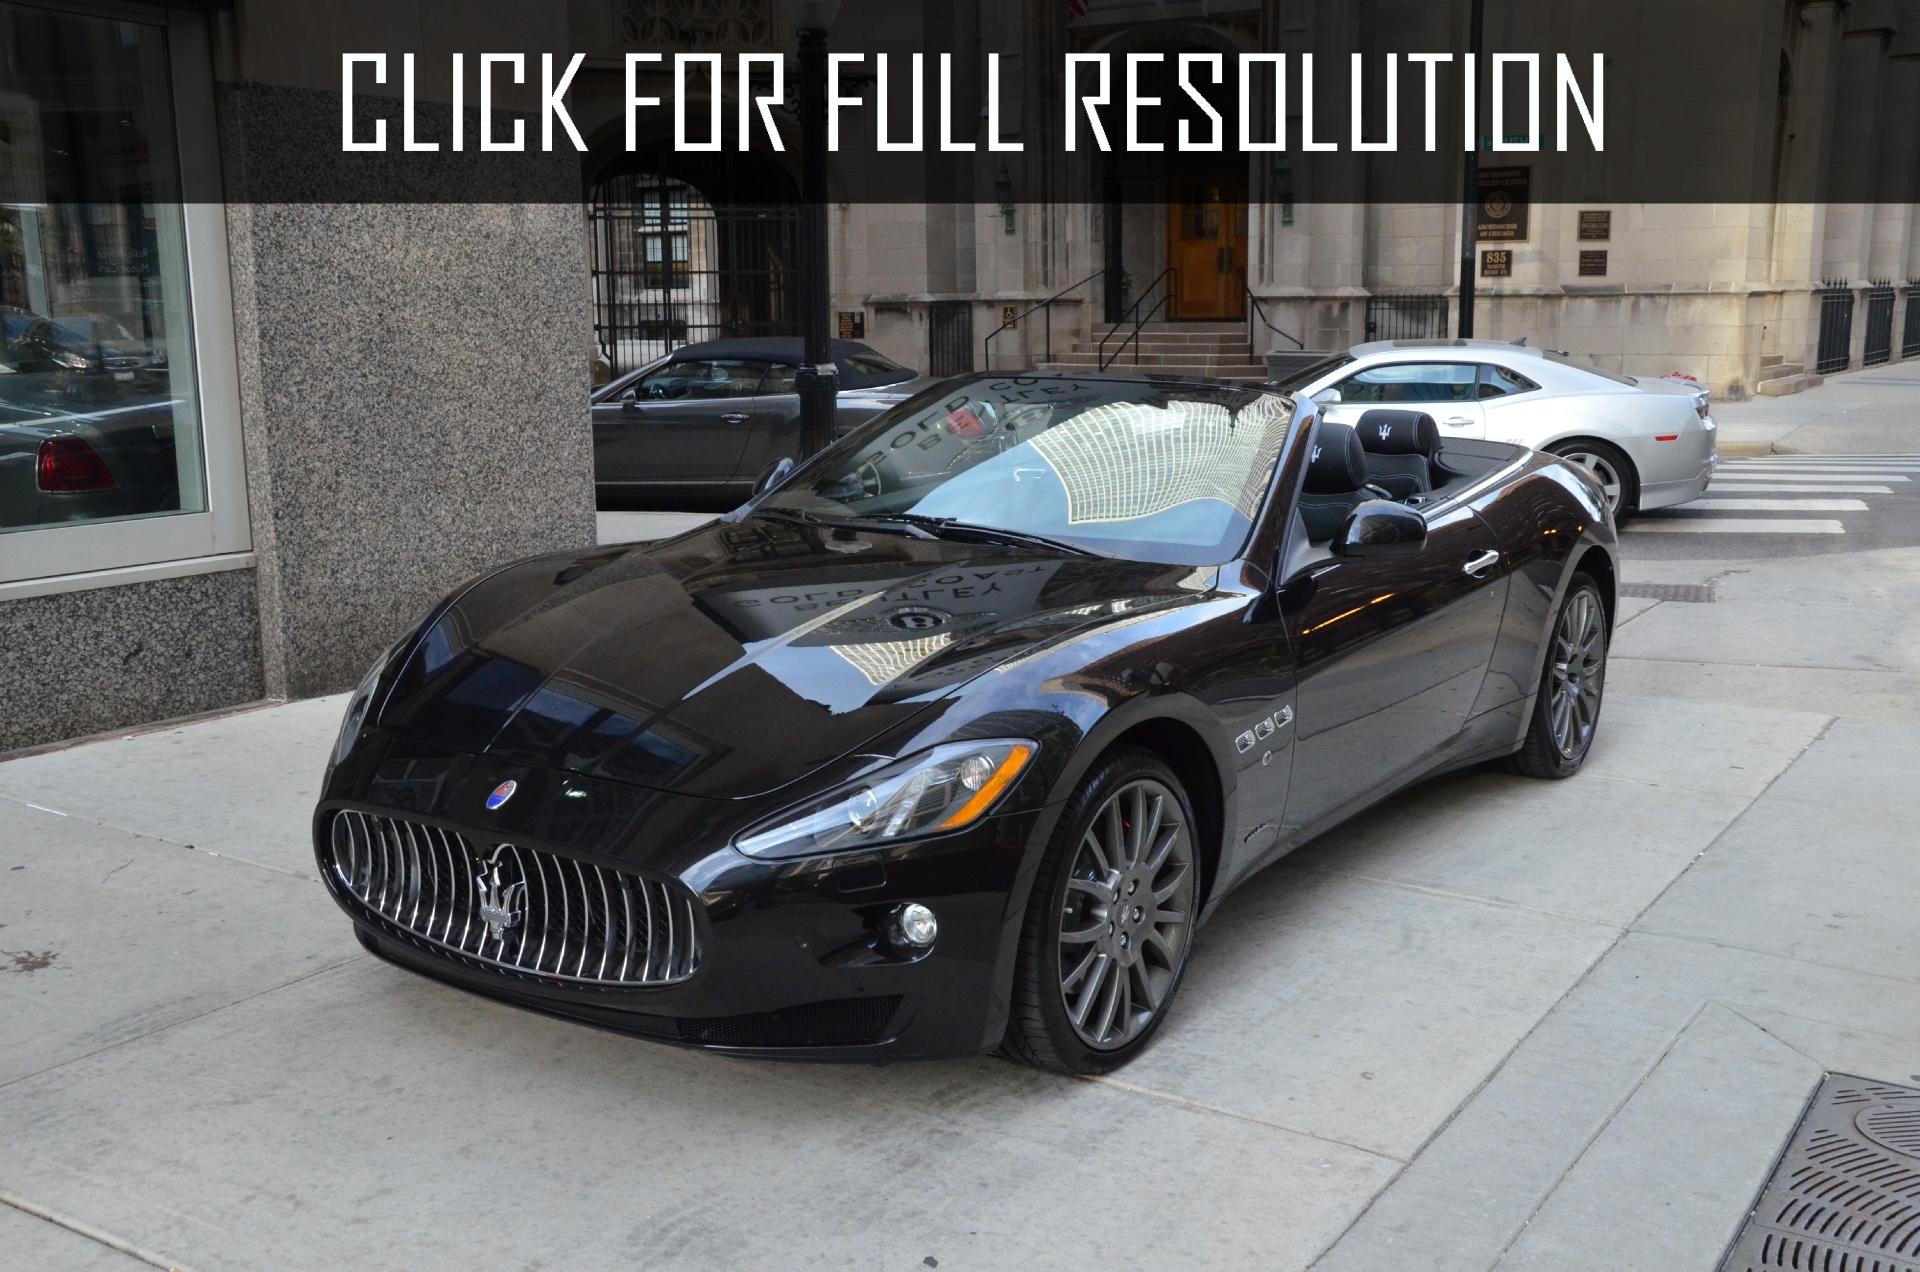 2013 Maserati Granturismo Convertible